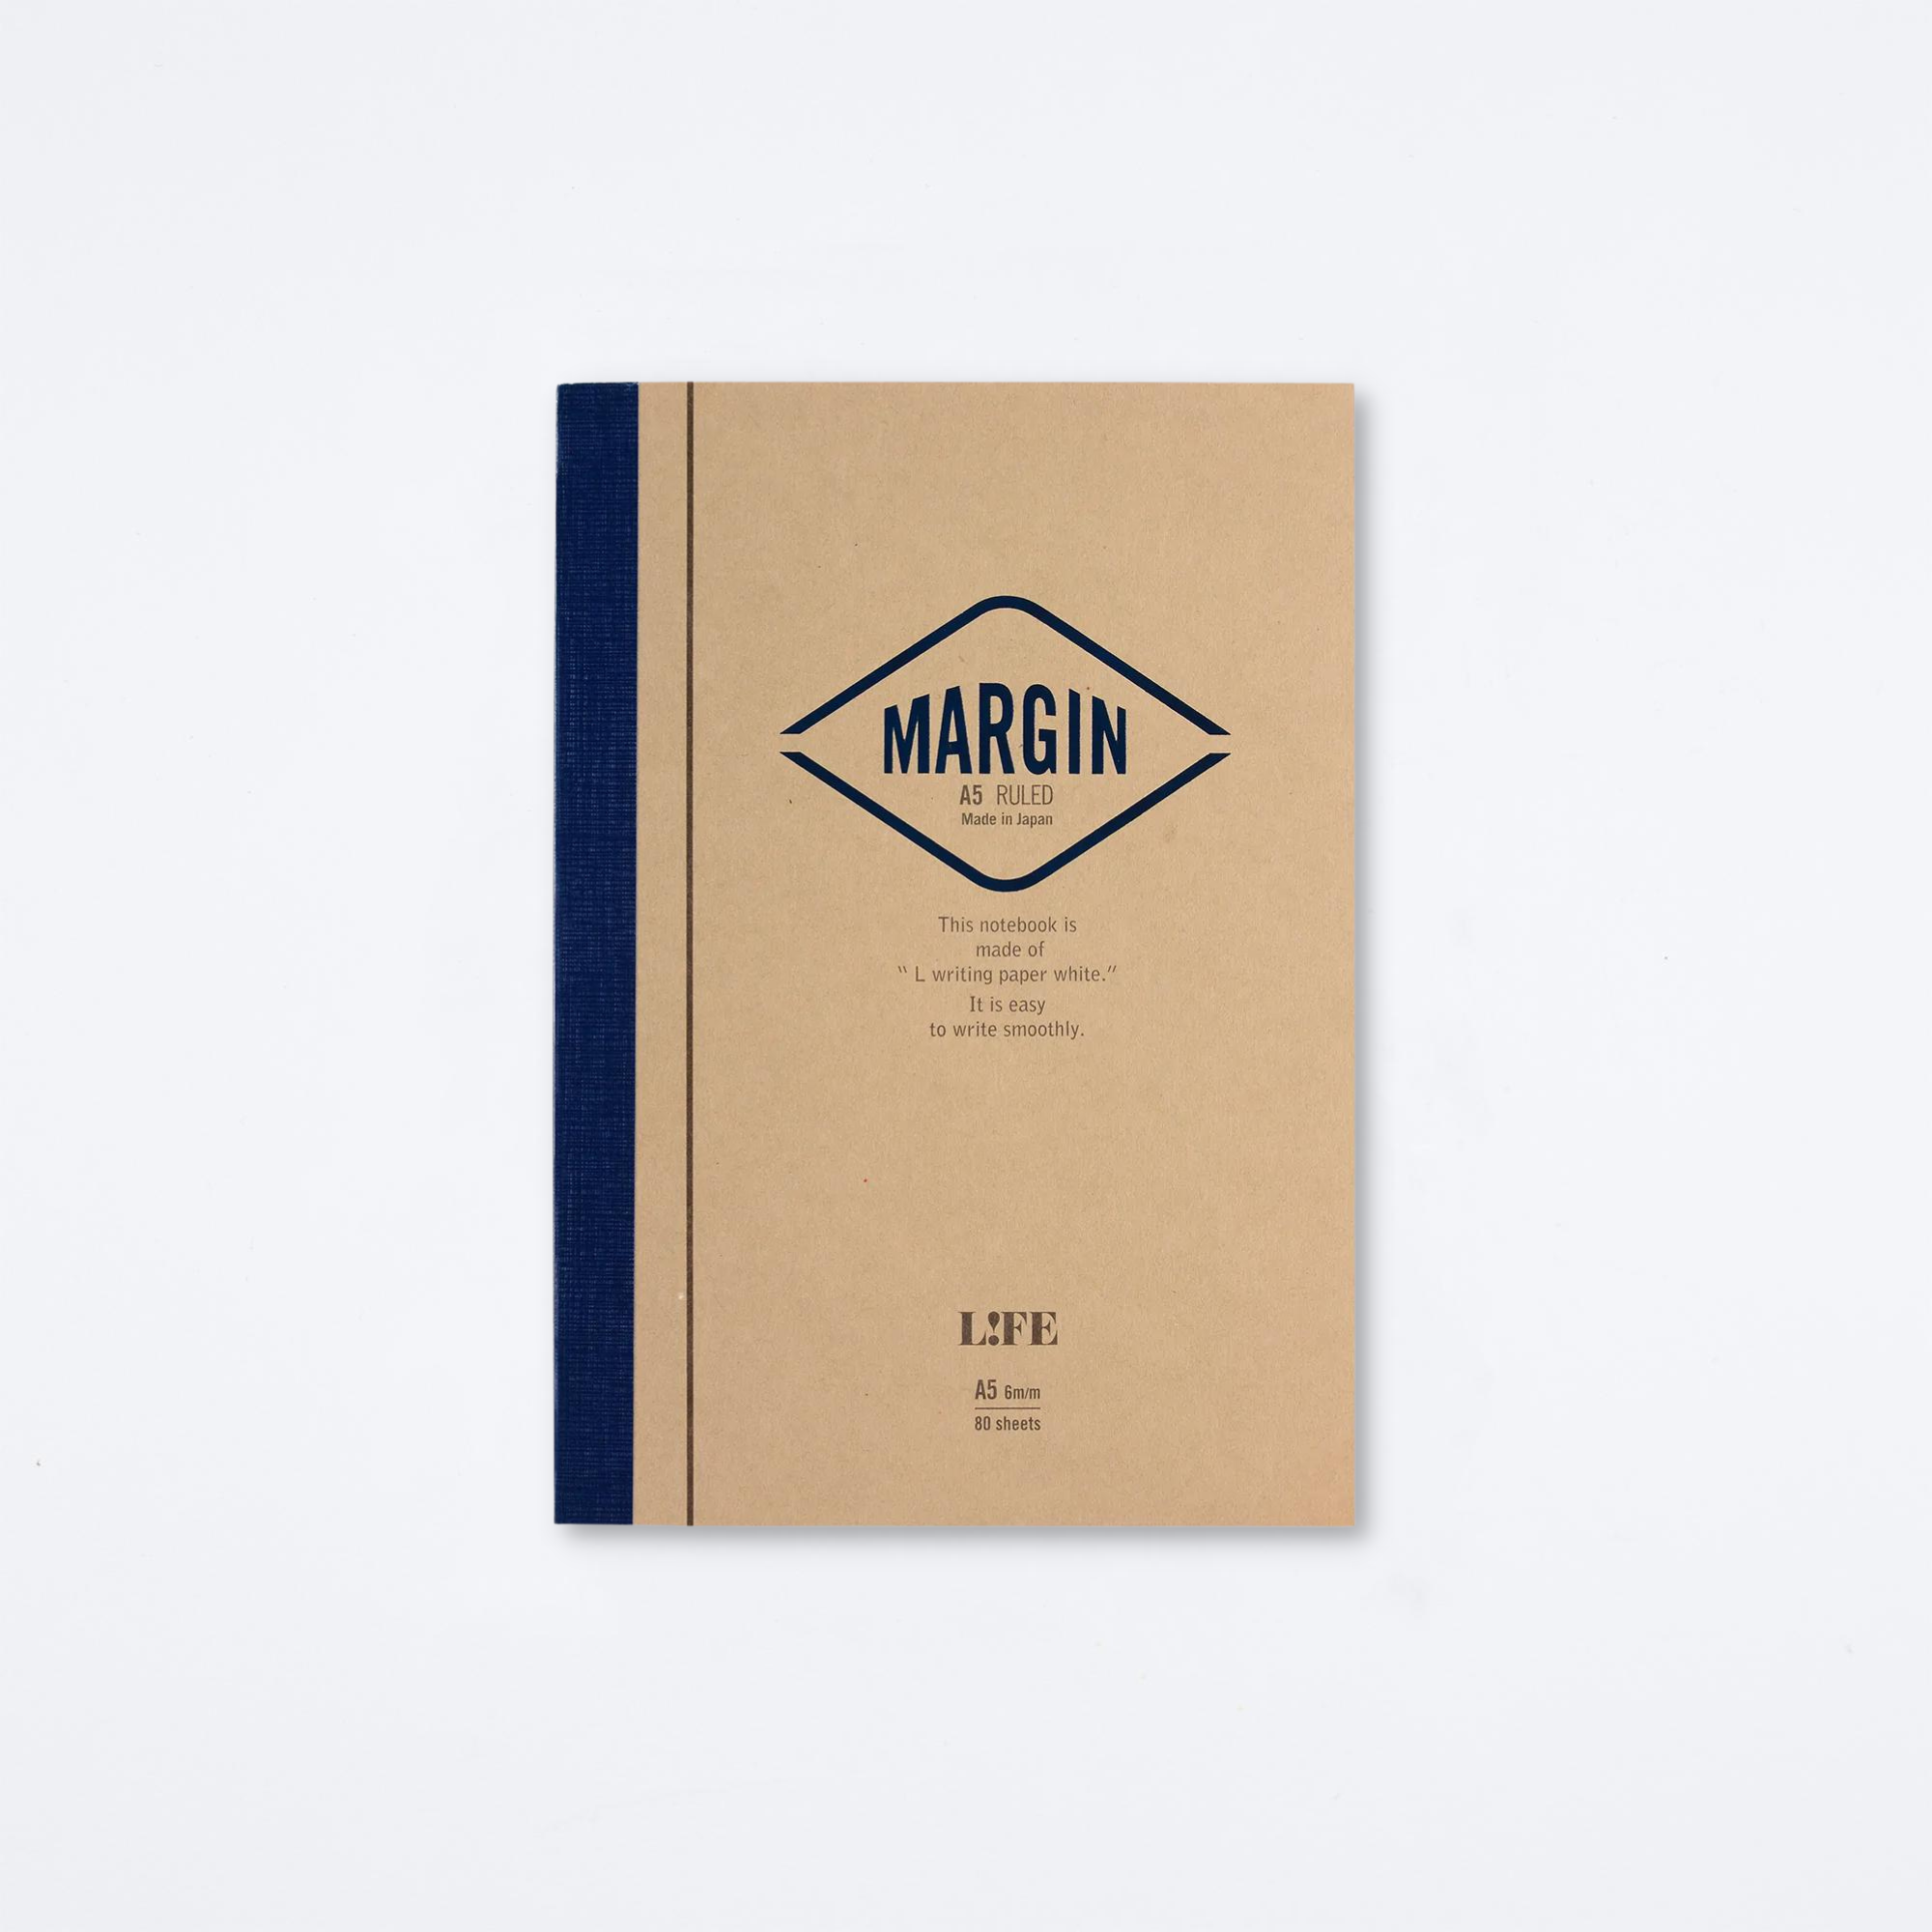 A5 MD Notebook Light — Archer Paper Goods